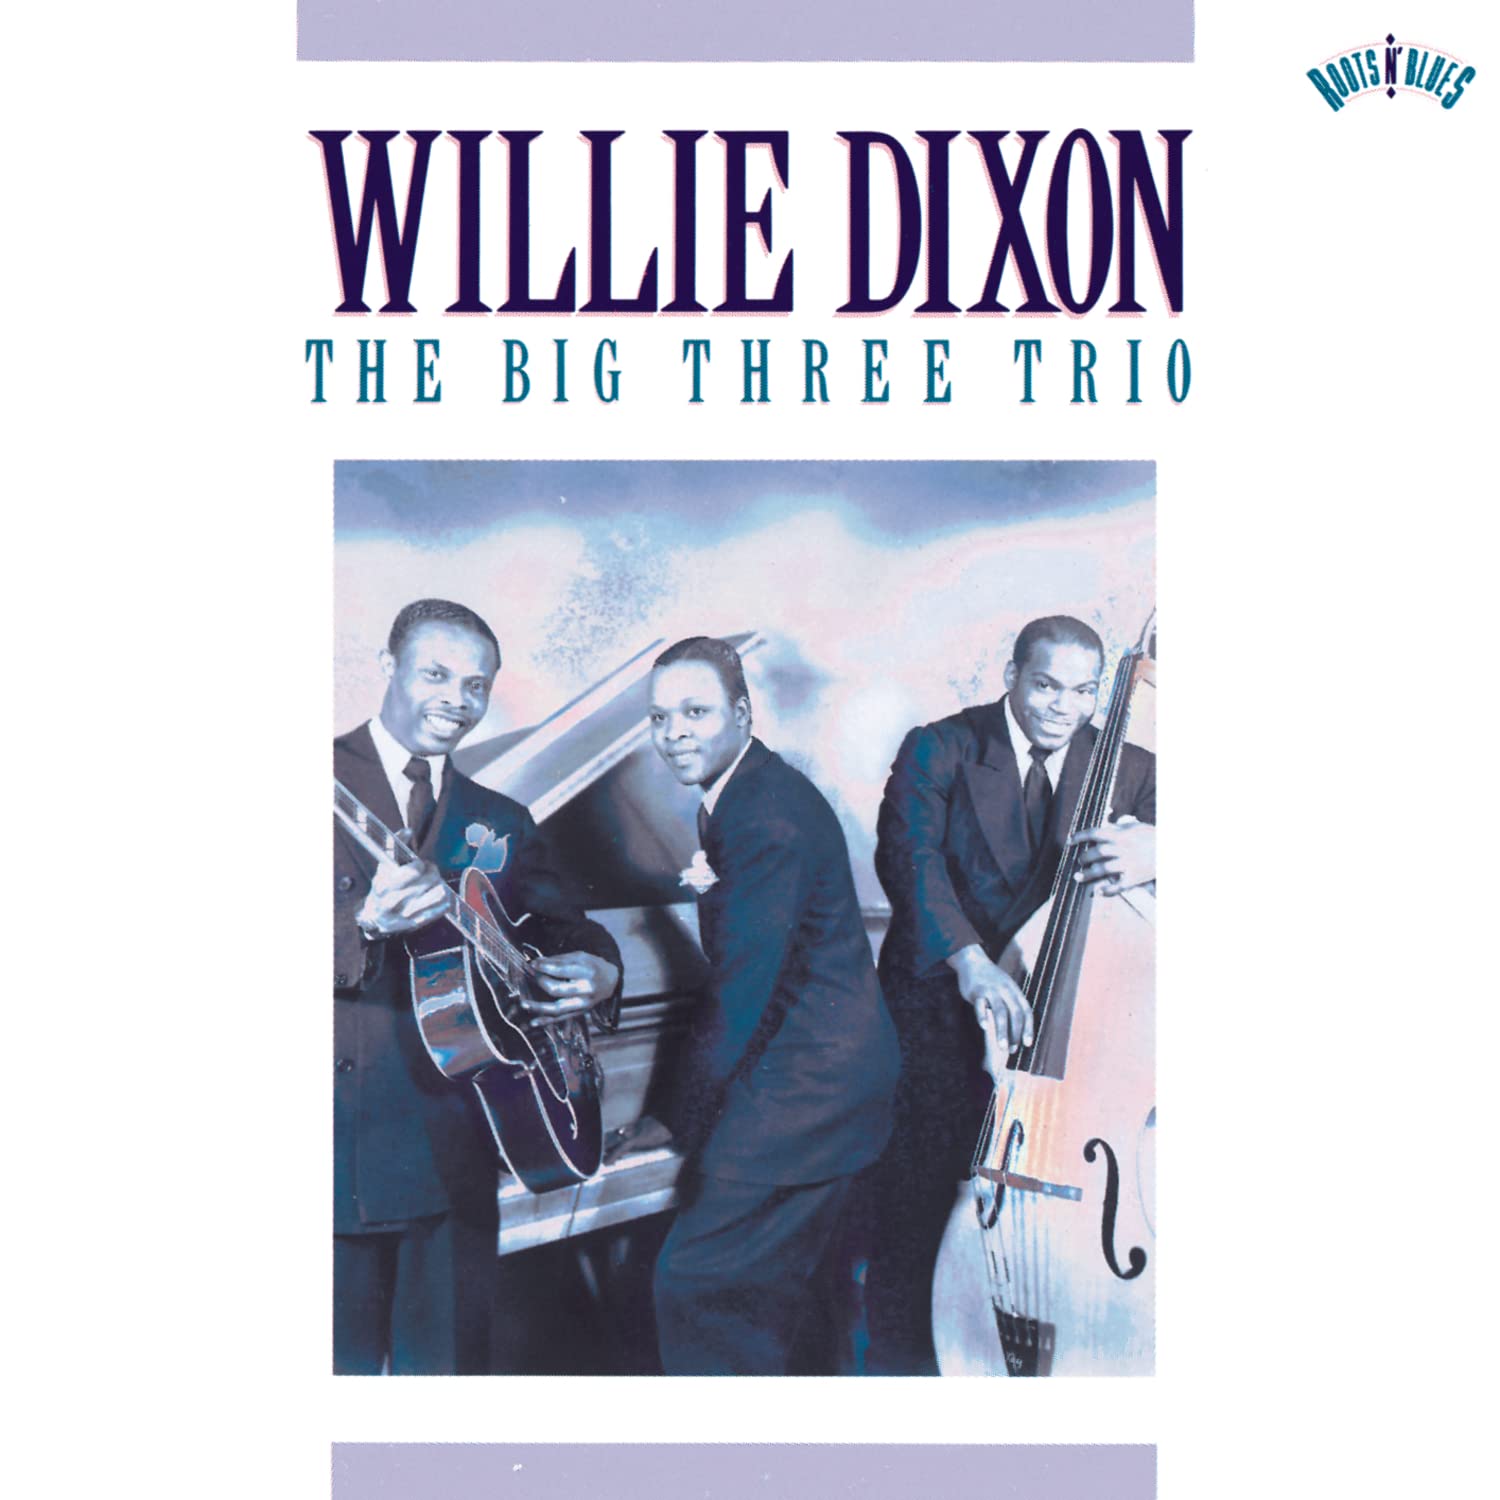 Willie Dixon- The Big Three Trio